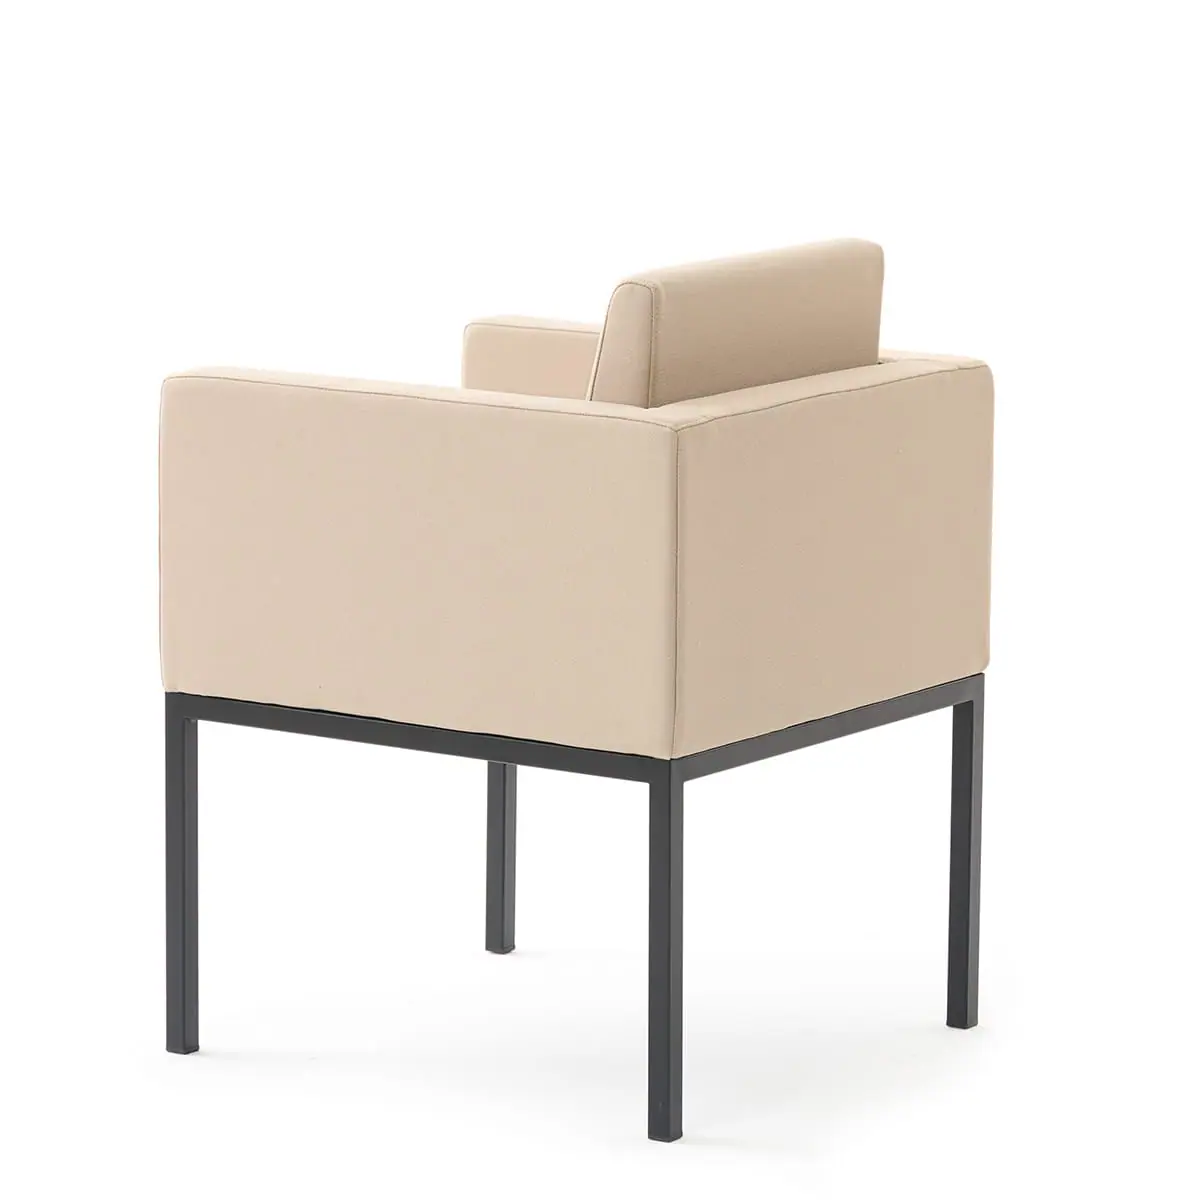 delaoliva-cubik-soft-lounge-seating-005